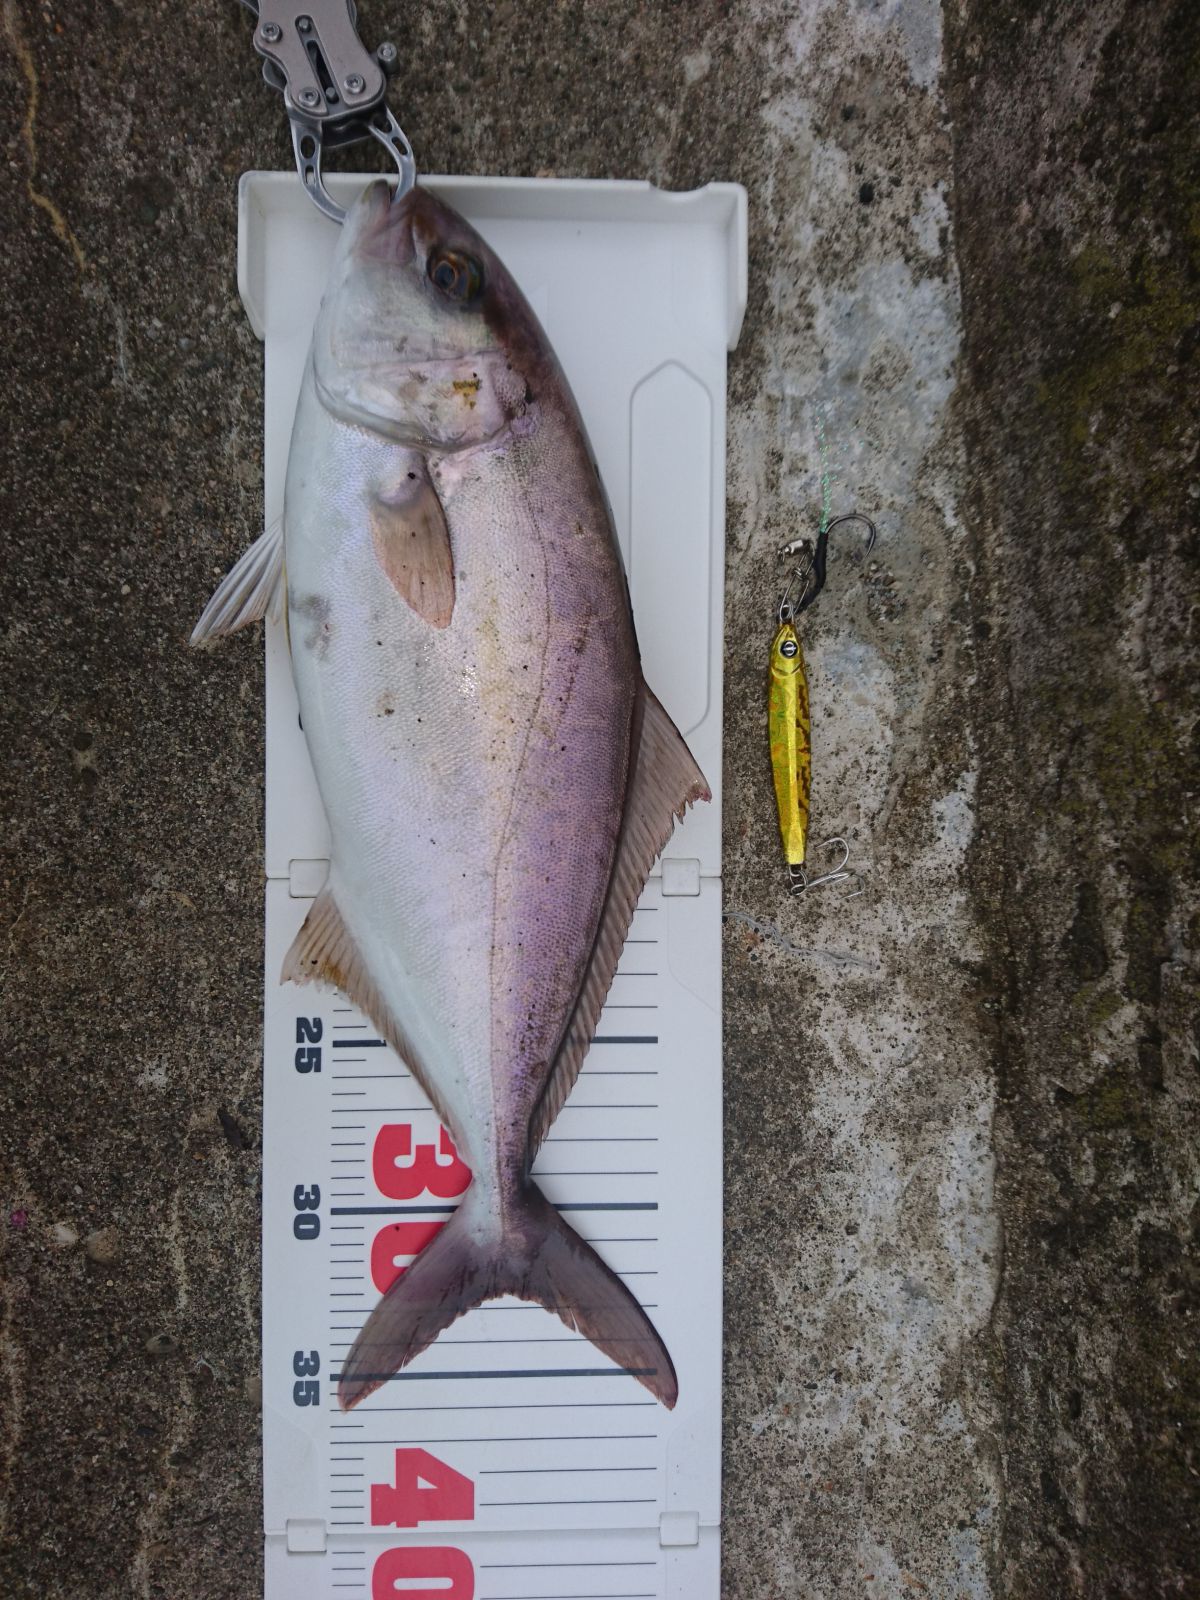 シオゴ(カンパチの若魚36.5cm)